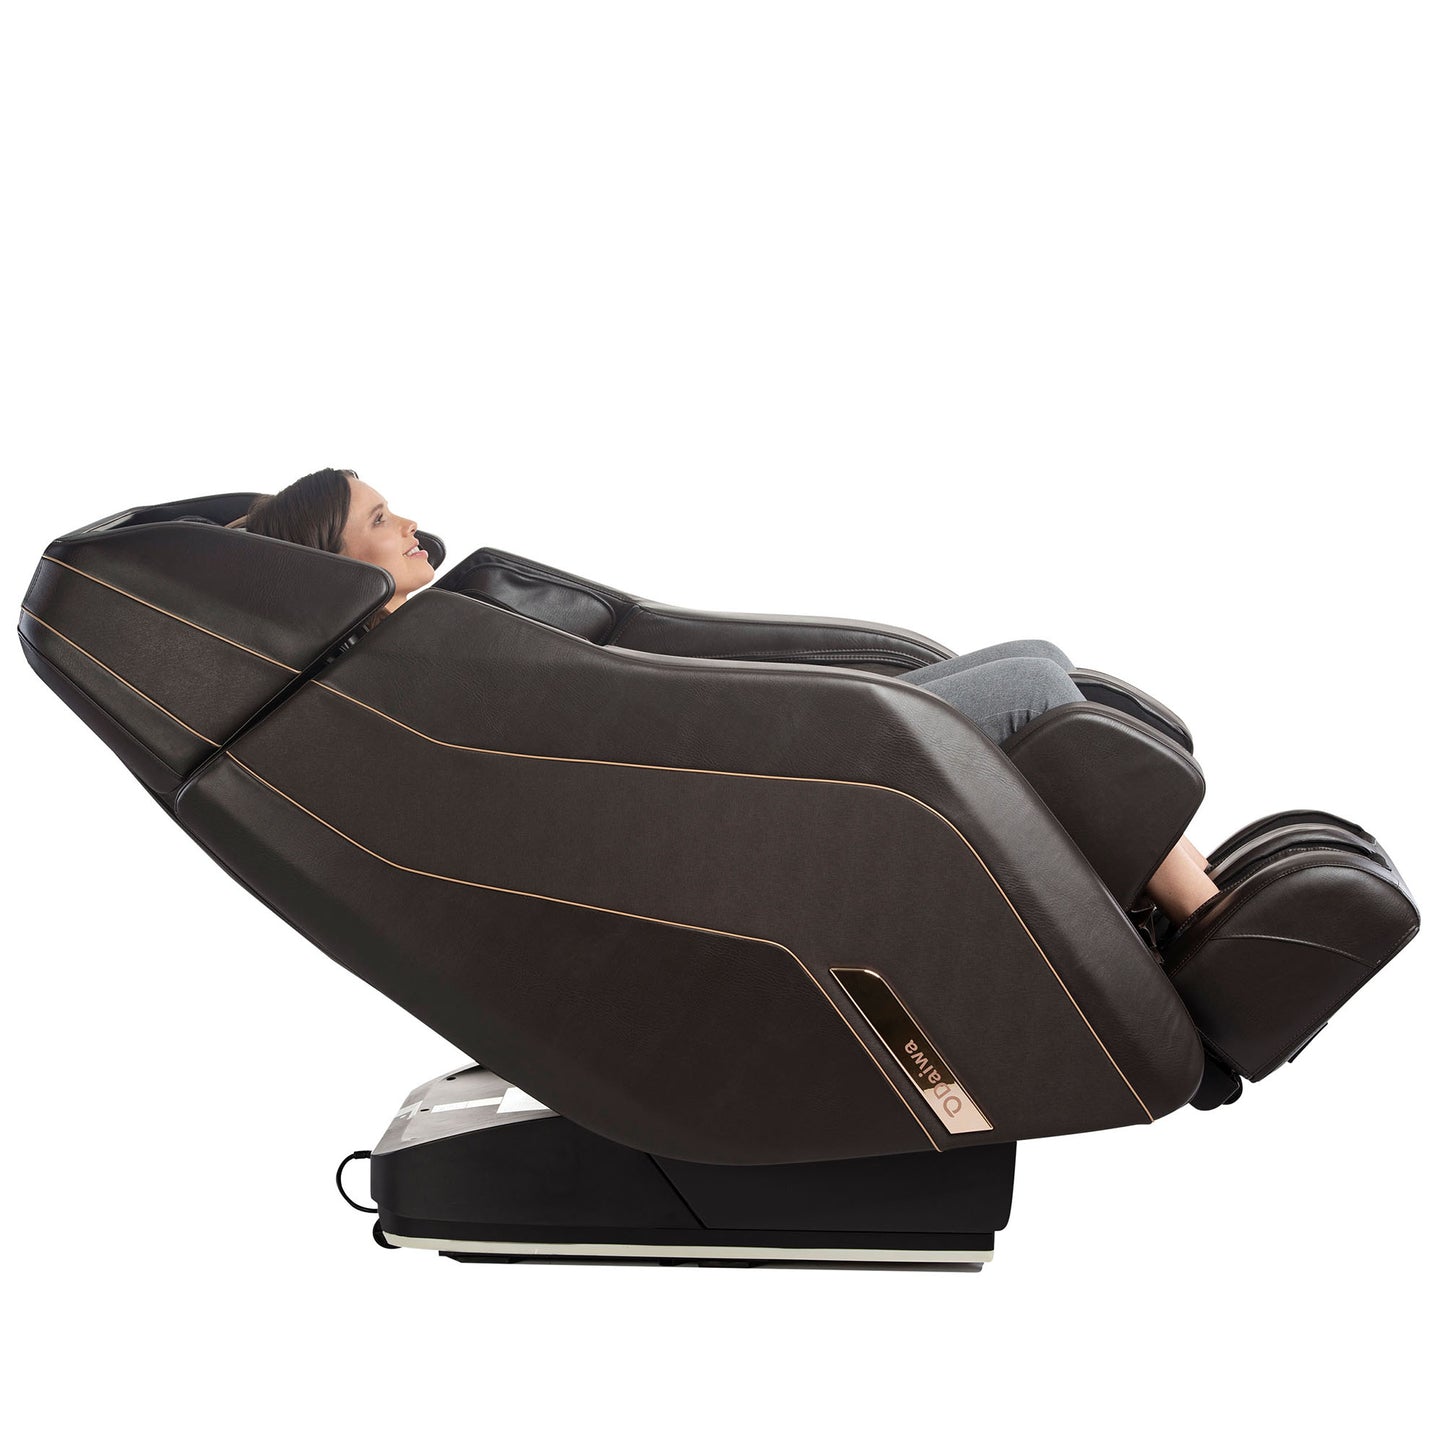 Daiwa Pegasus 2 Smart Massage Chair